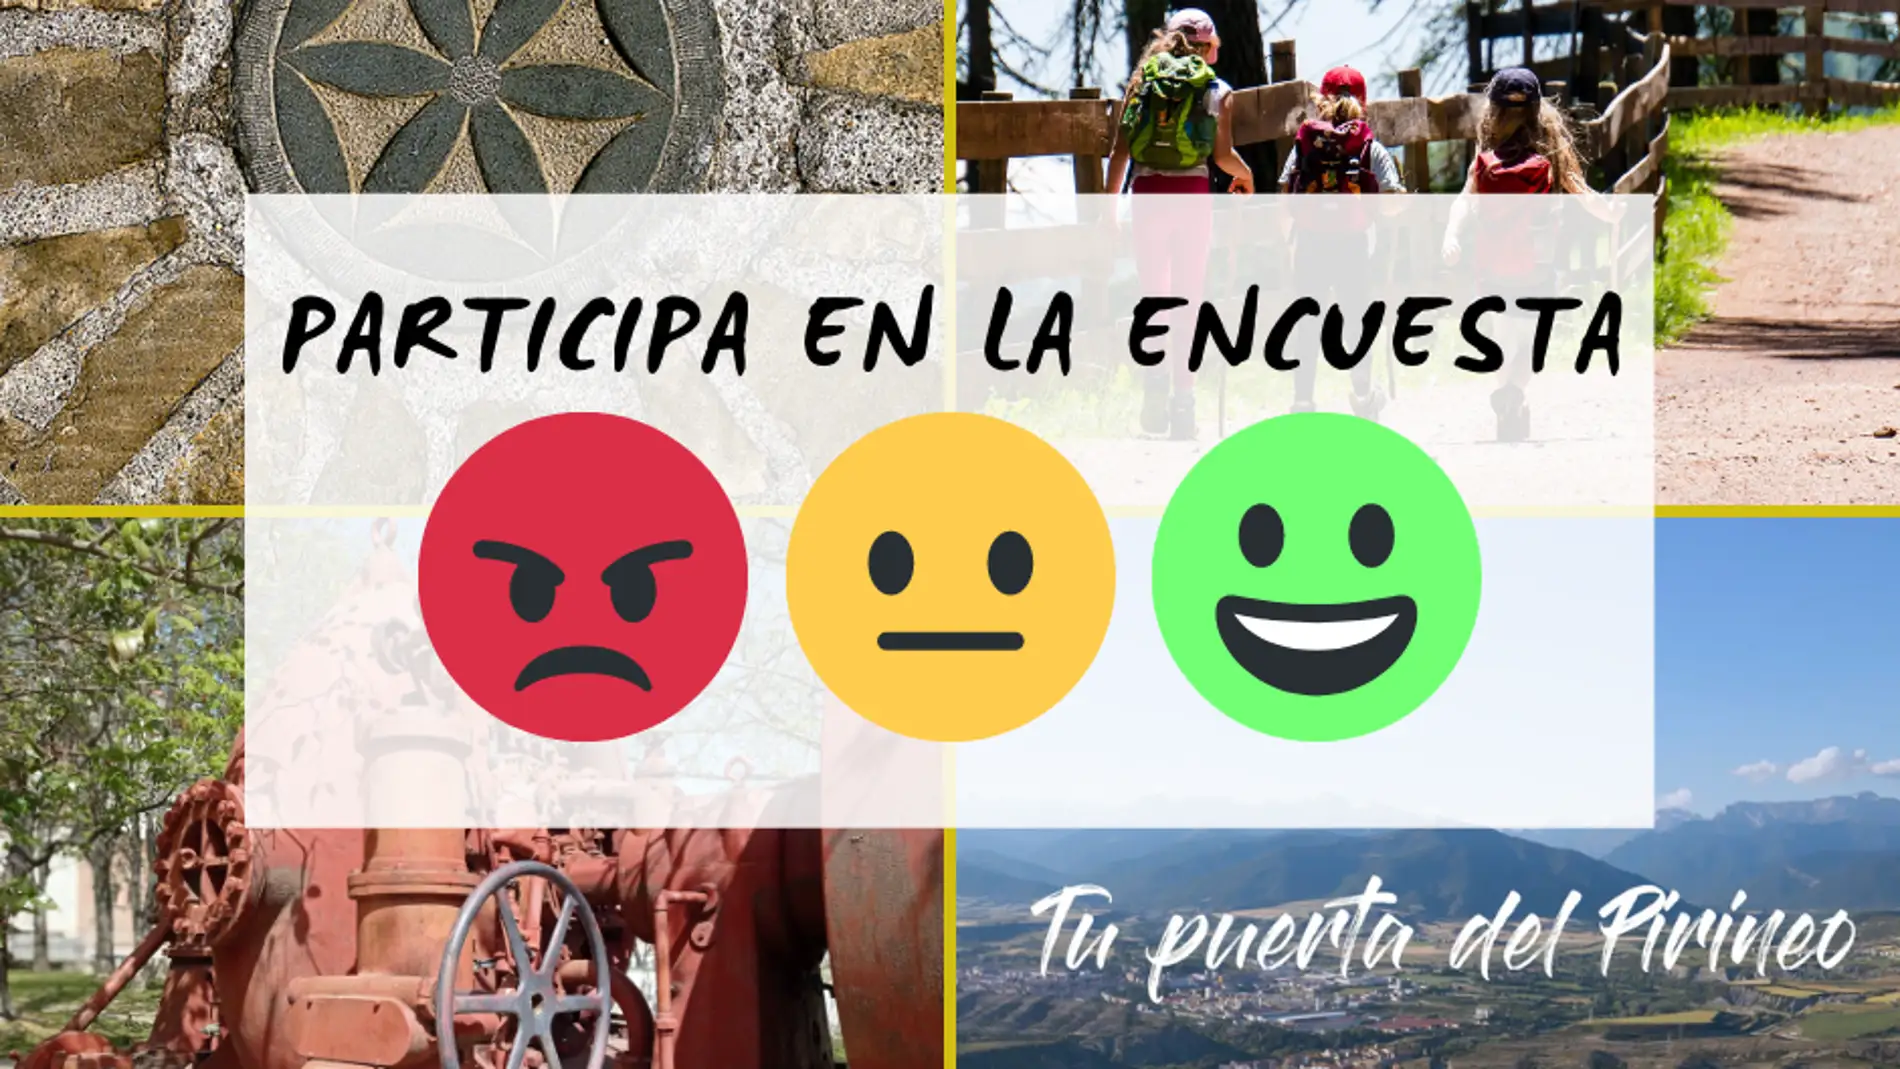 Encuesta participativa sobre turismo en Sabiñánigo